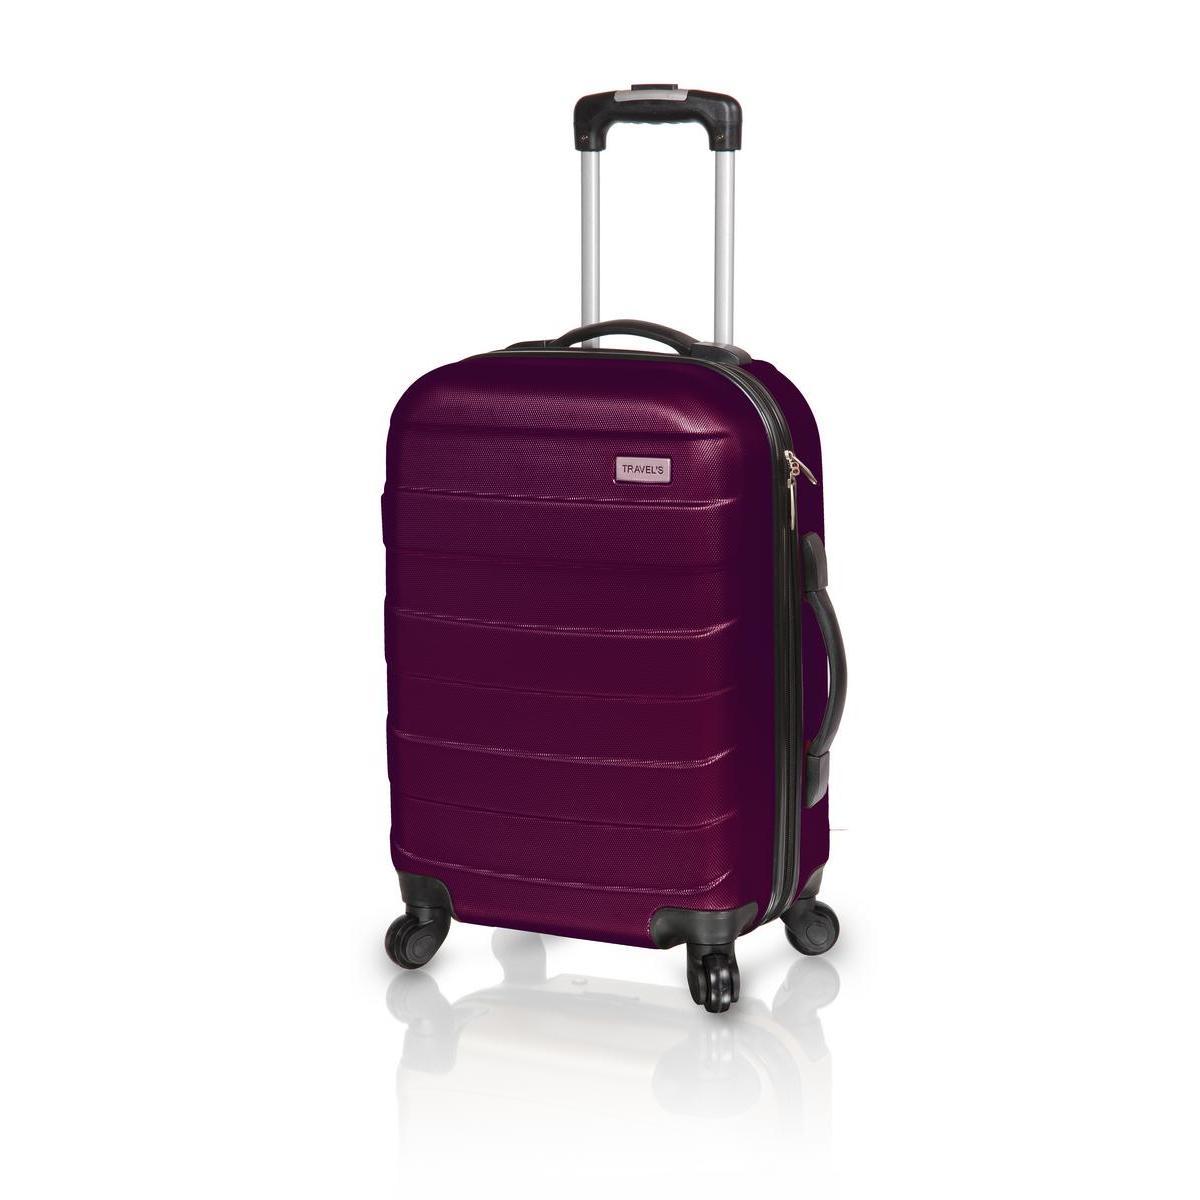 Valise rigide - ABS - 43 x 26 x H 65 cm - Violet